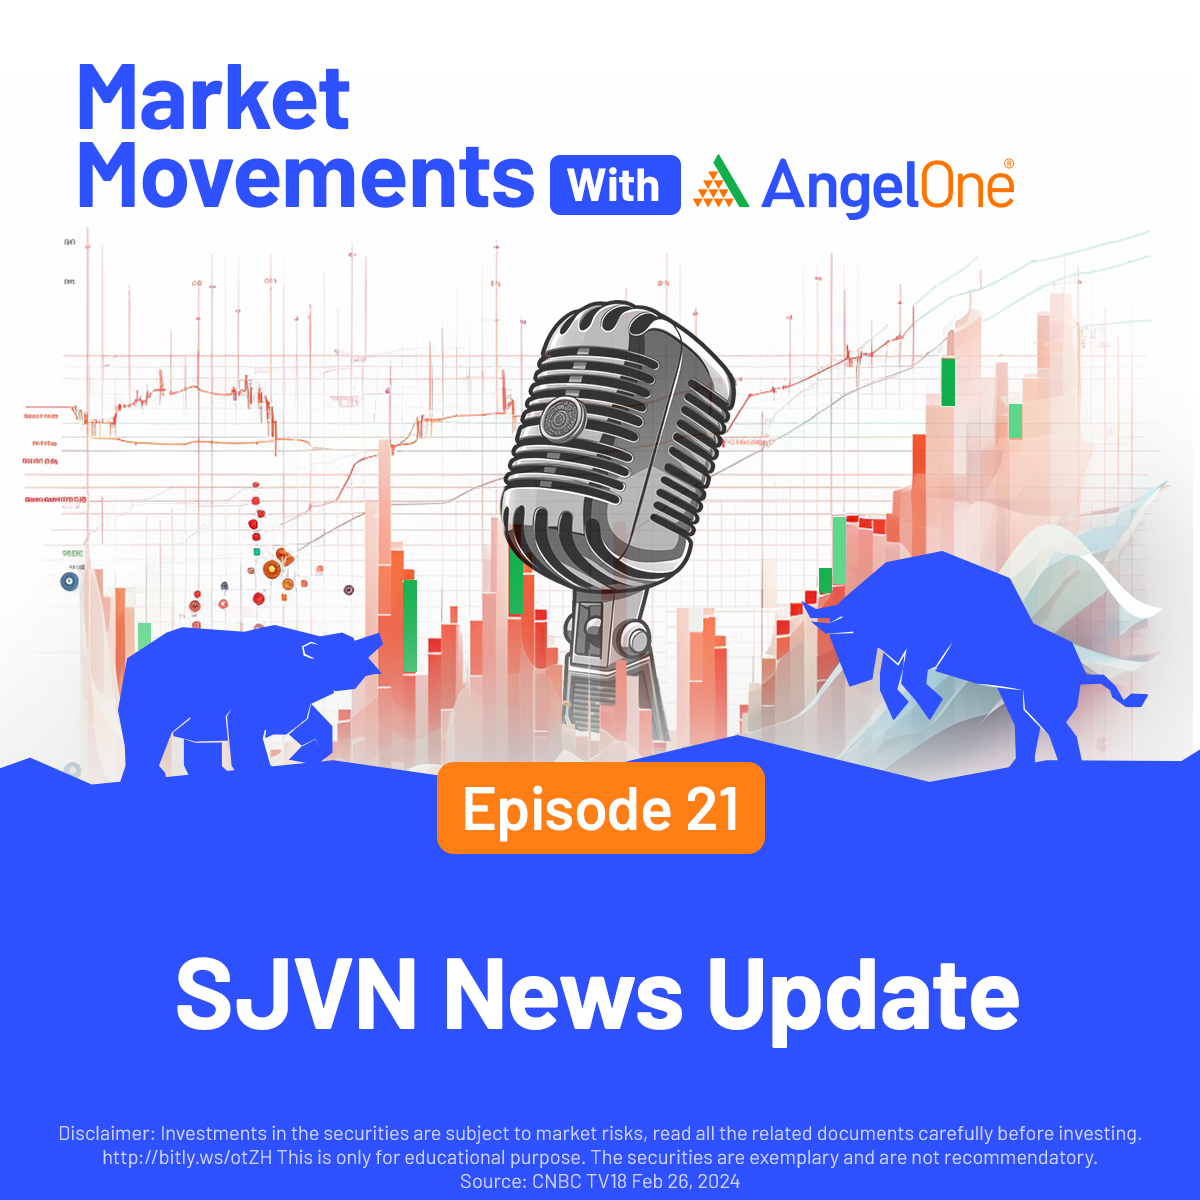 SJVN News Update